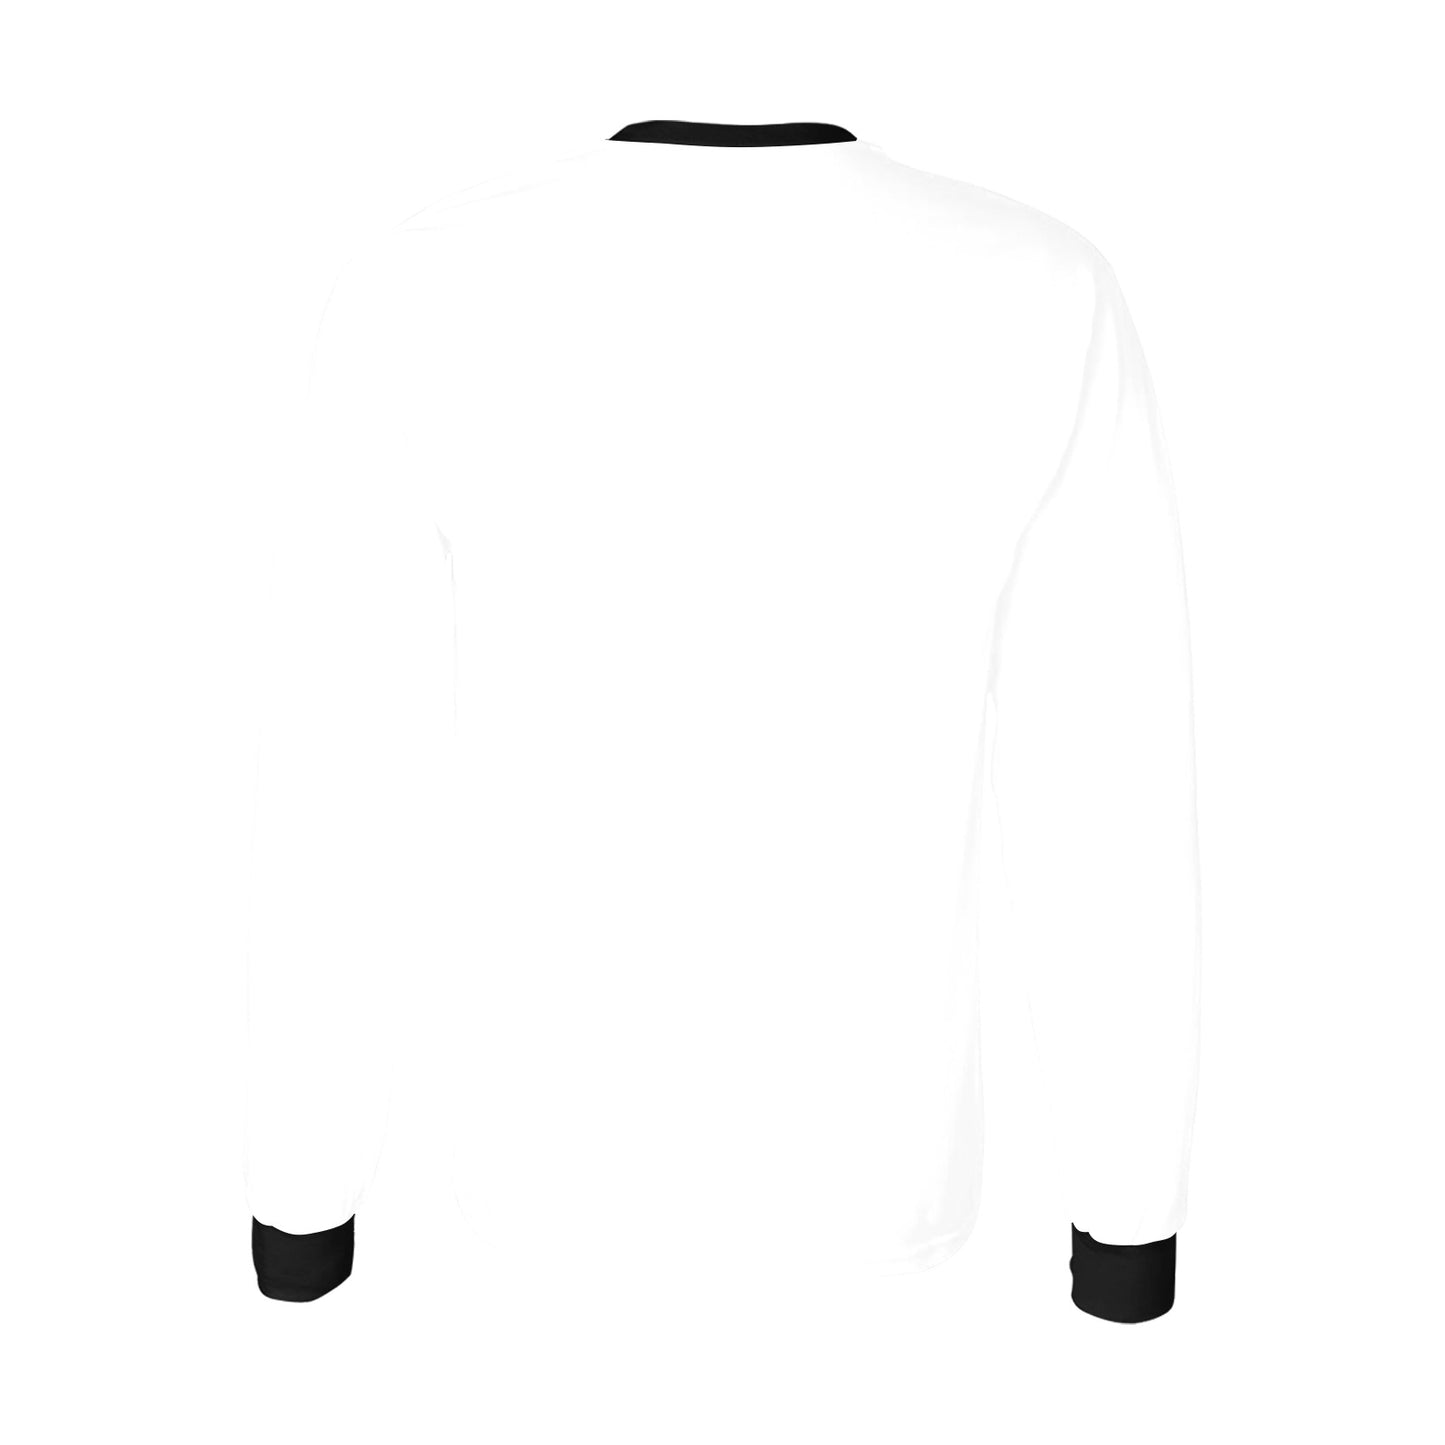 Bully-Proof NFT ARTWORK Men's Long Sleeve T-shirt(ModelT51)